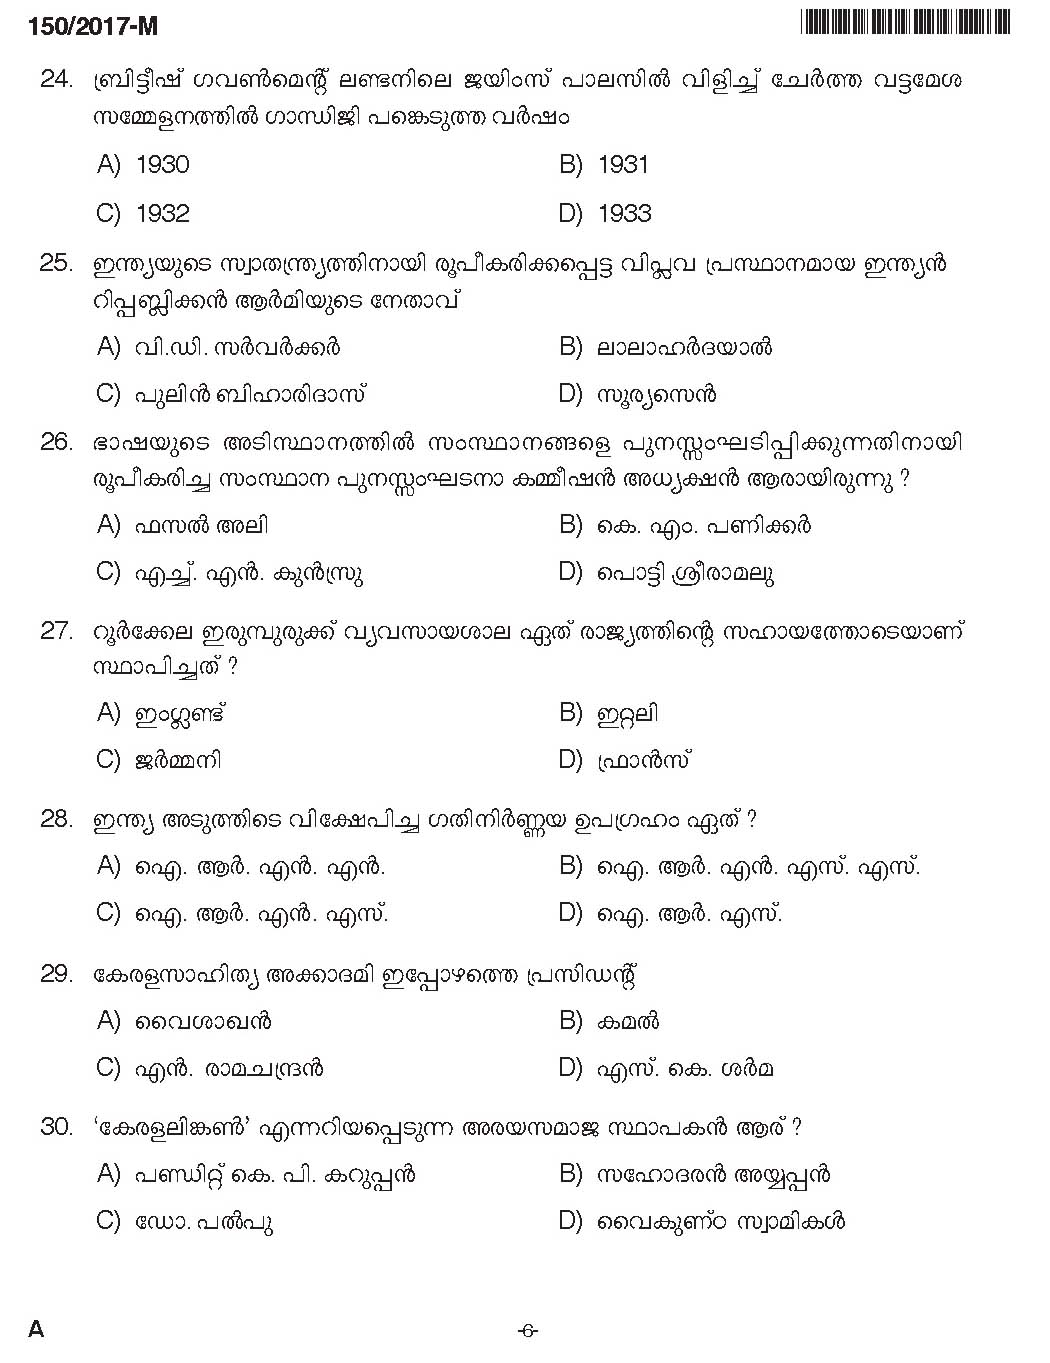 Kerala PSC Boat Deckman Exam Question Code 1502017 M 5